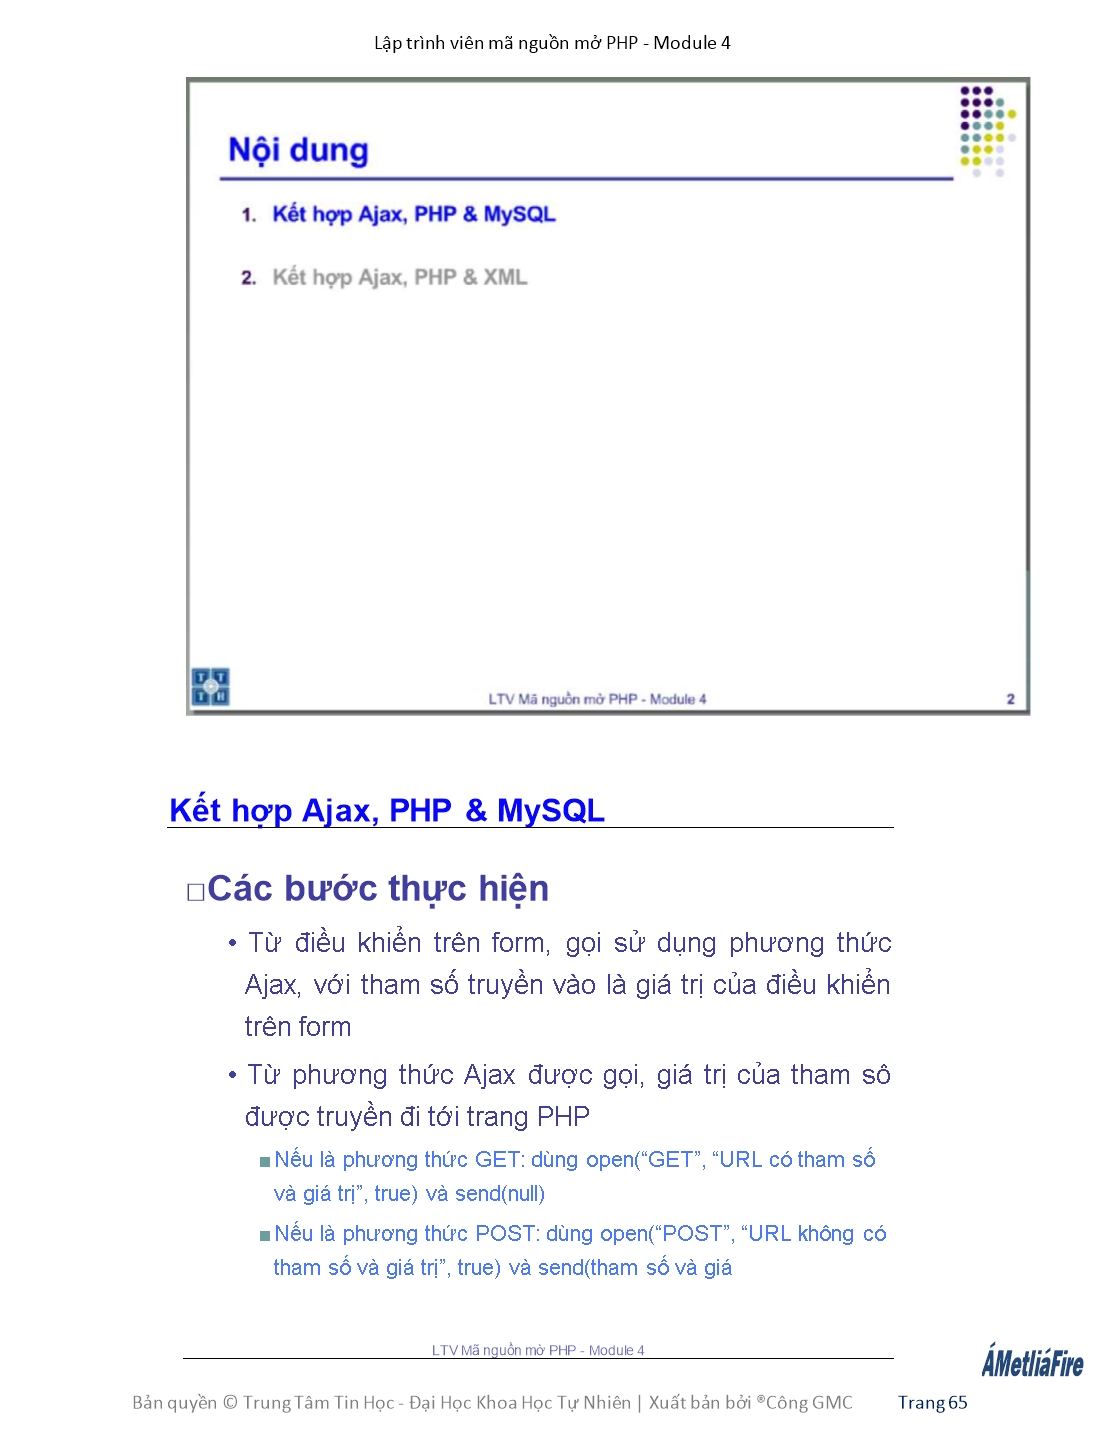 Giáo trình Module 4: Lập trình viên mã nguồn mở PHP - Bài 6: Ajax 2 trang 2